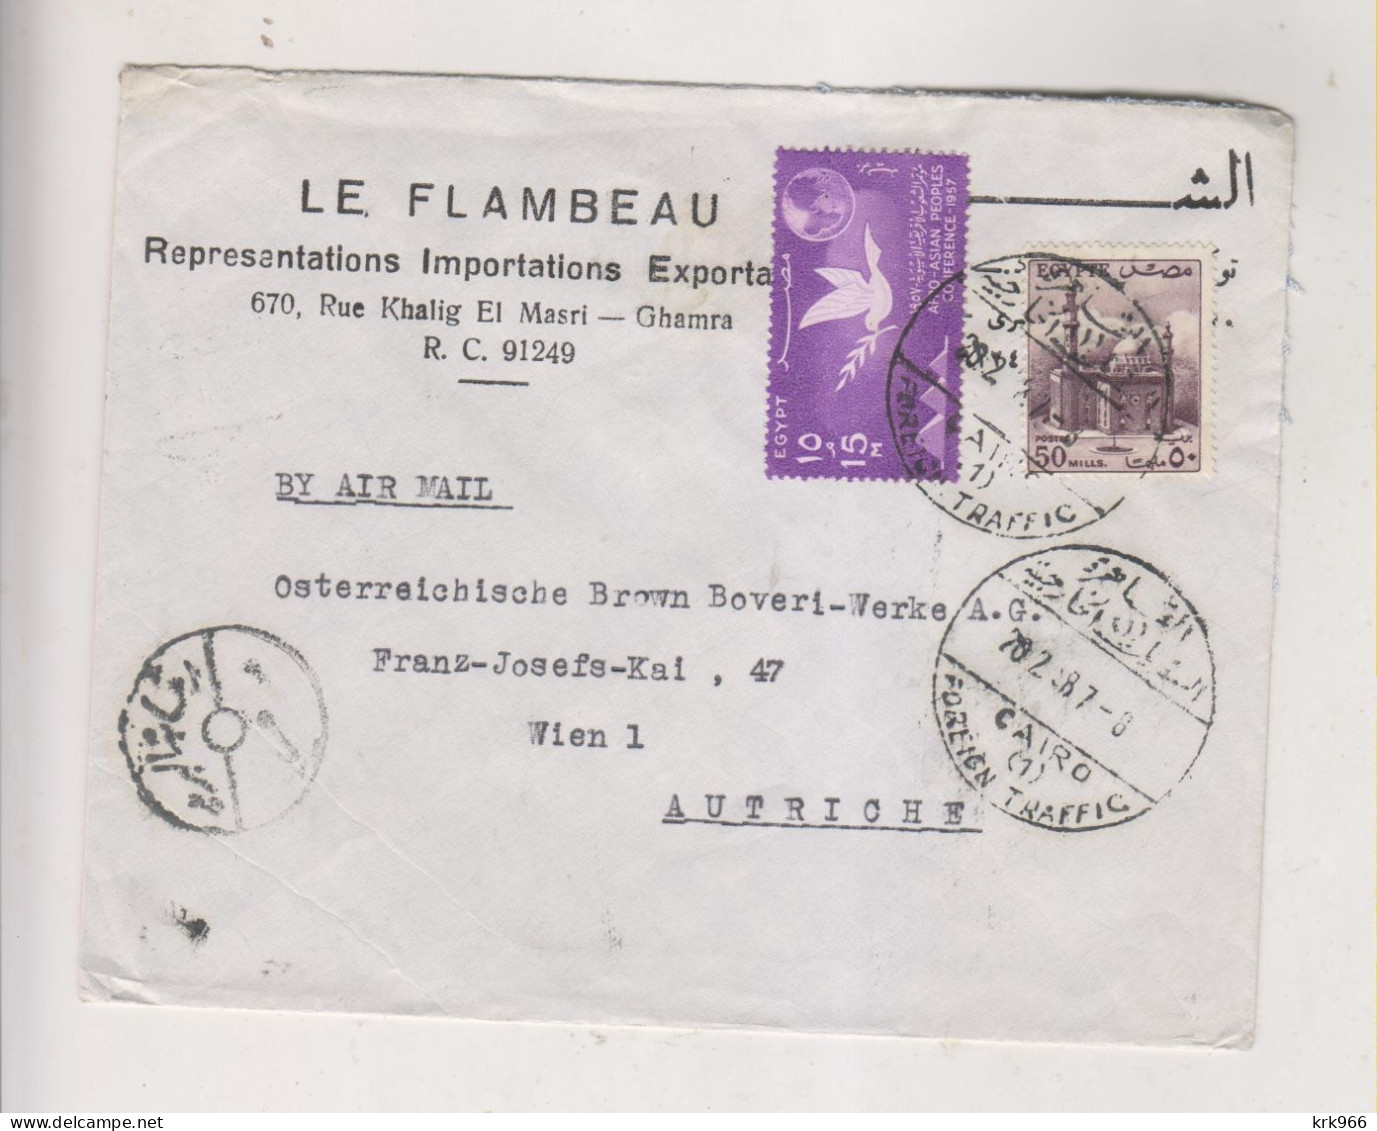 EGYPT CAIRO 1958  Airmail Cover To Austria - Posta Aerea